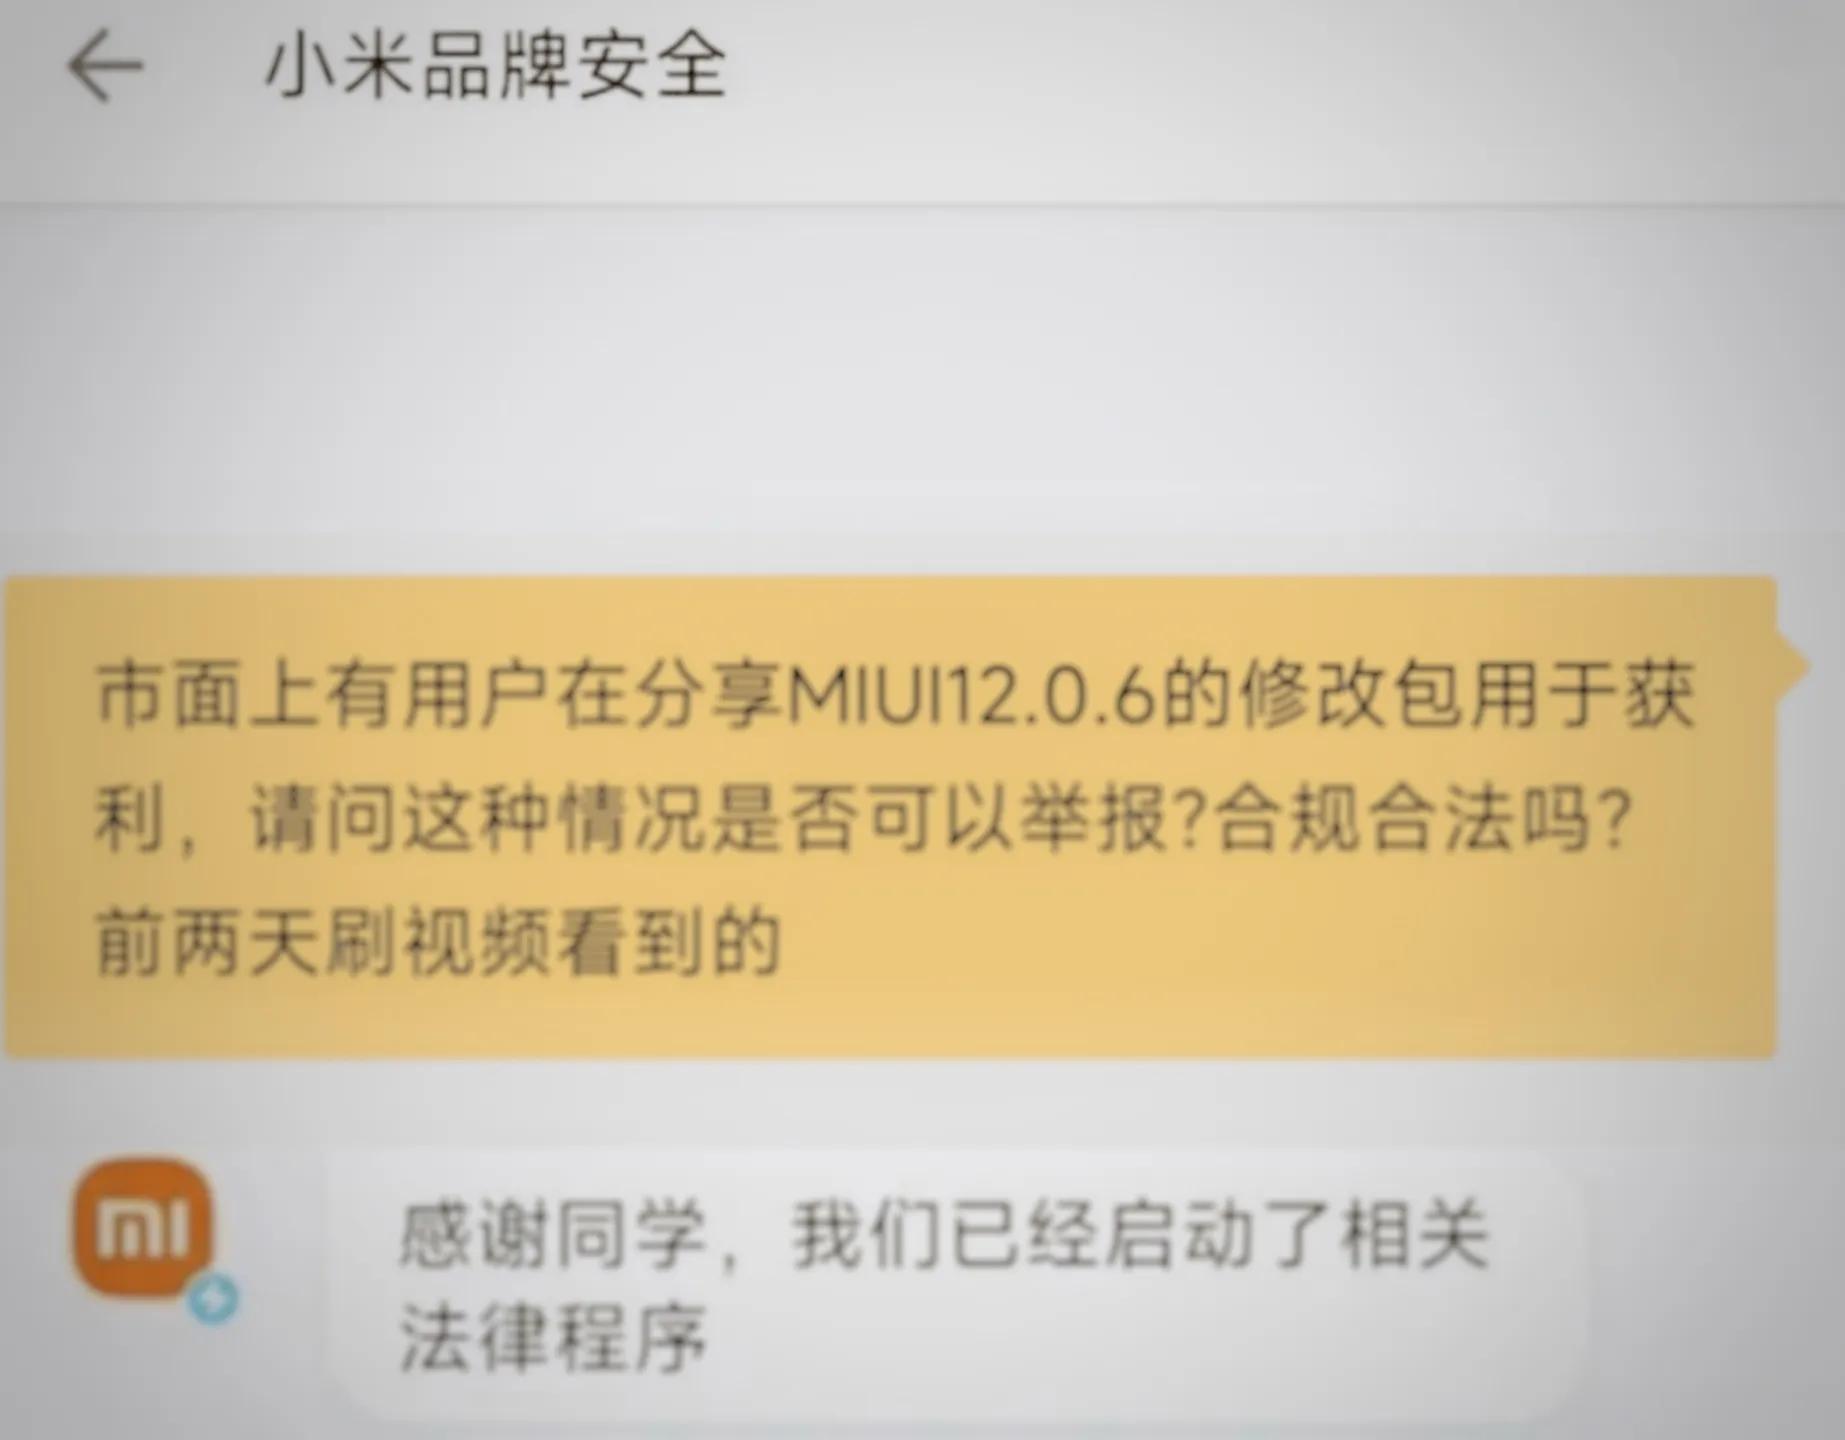 为什么我拒绝分享MIUI 12.0.6？这次，作者真的怂了